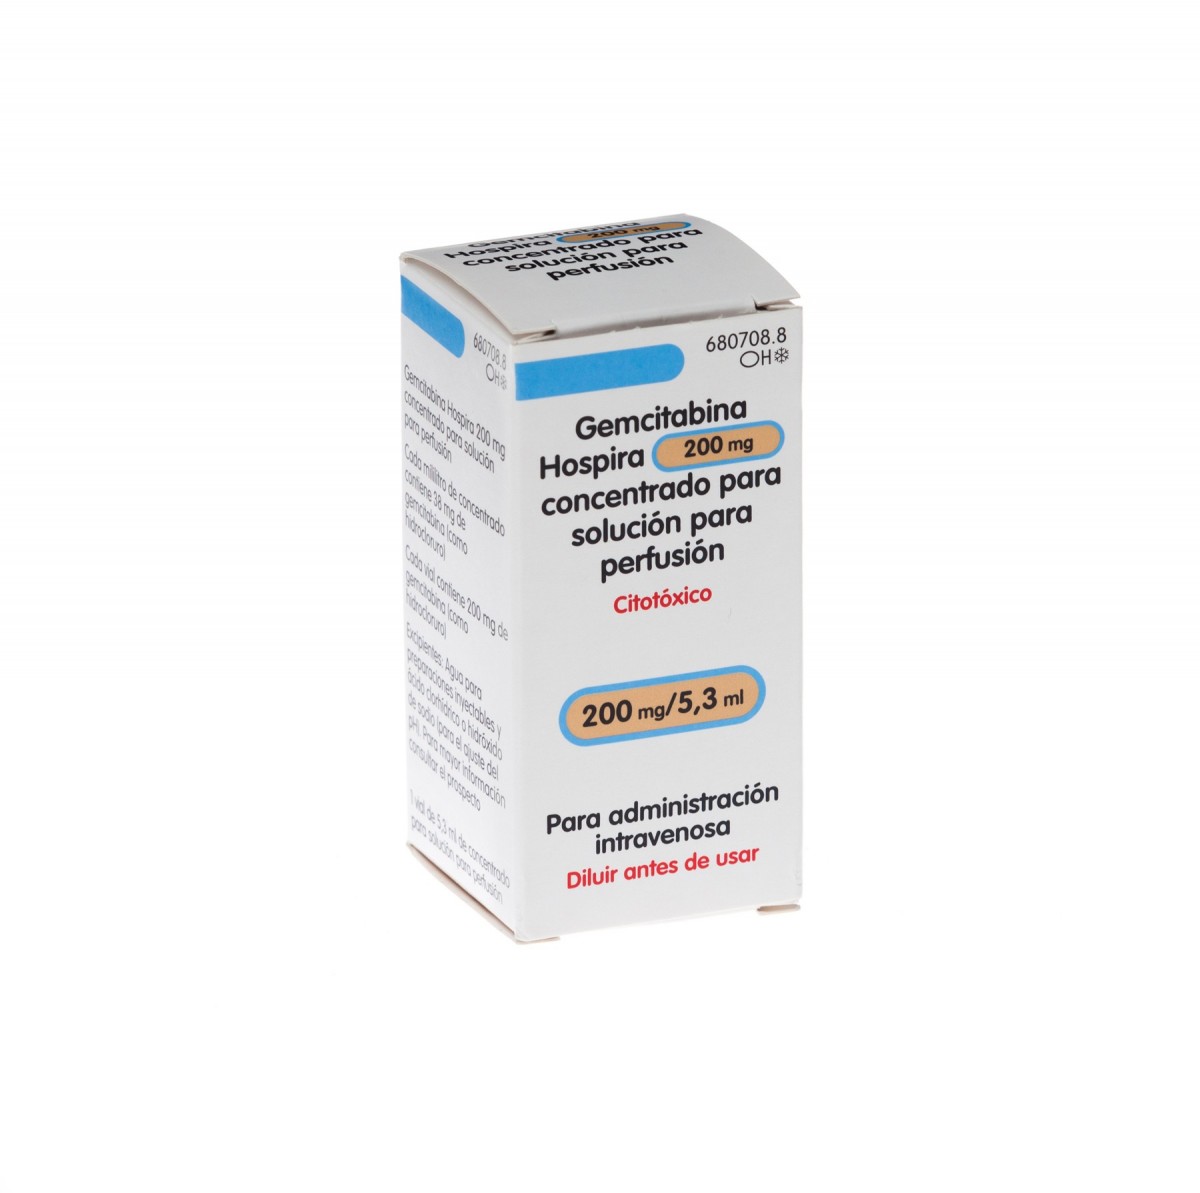 GEMCITABINA HOSPIRA 200 mg CONCENTRADO PARA SOLUCION PARA PERFUSION , 1 vial de 5,3 ml fotografía del envase.